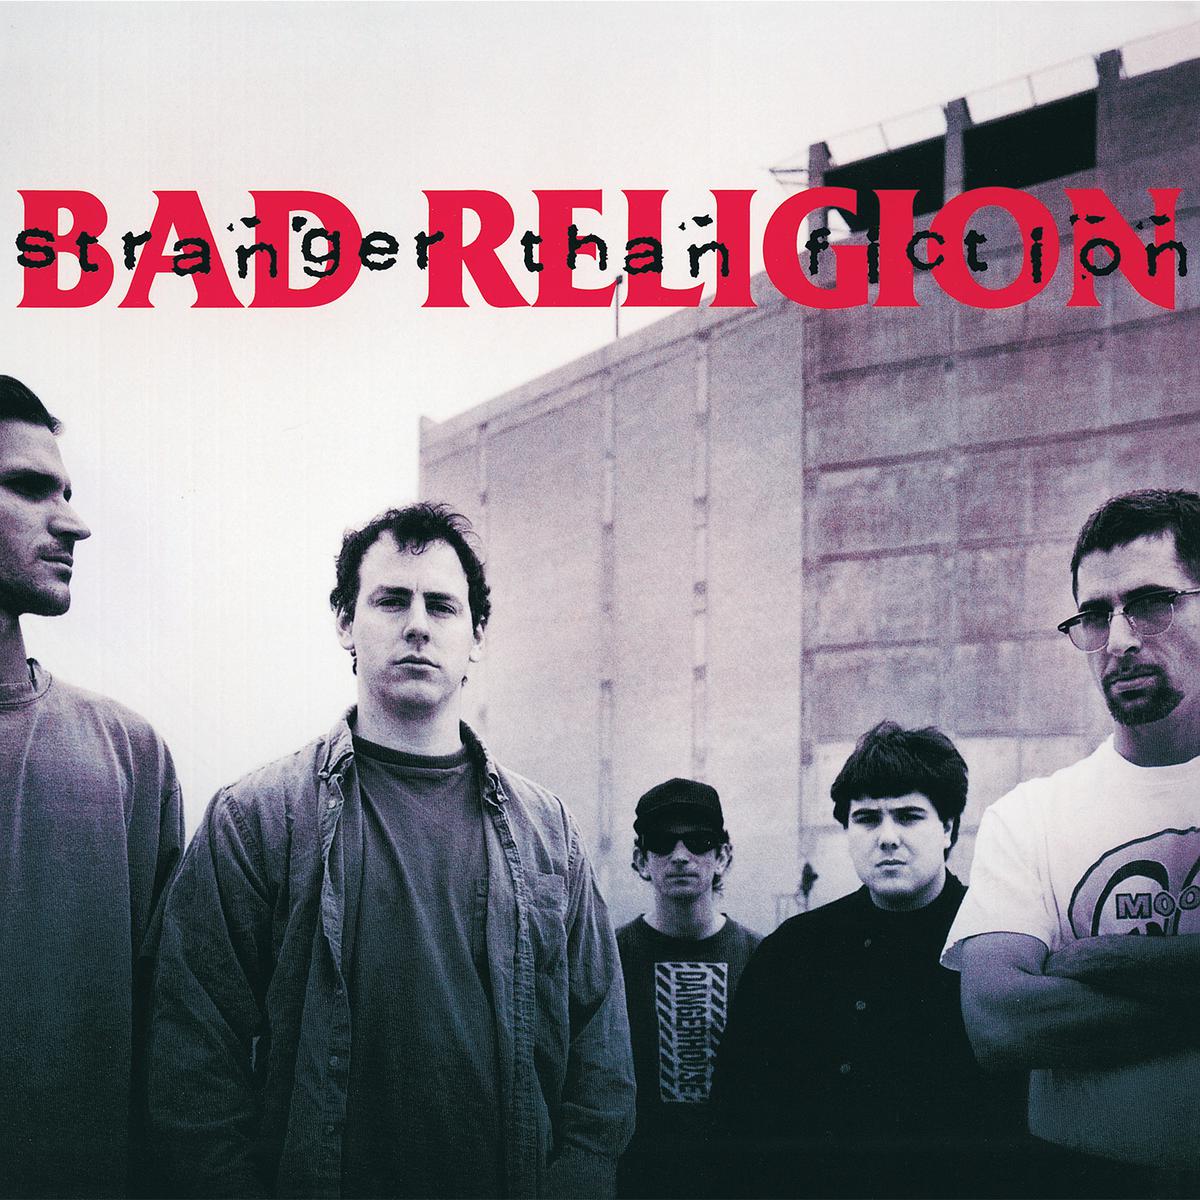 Bad Religion - Stranger Than Fiction - LP